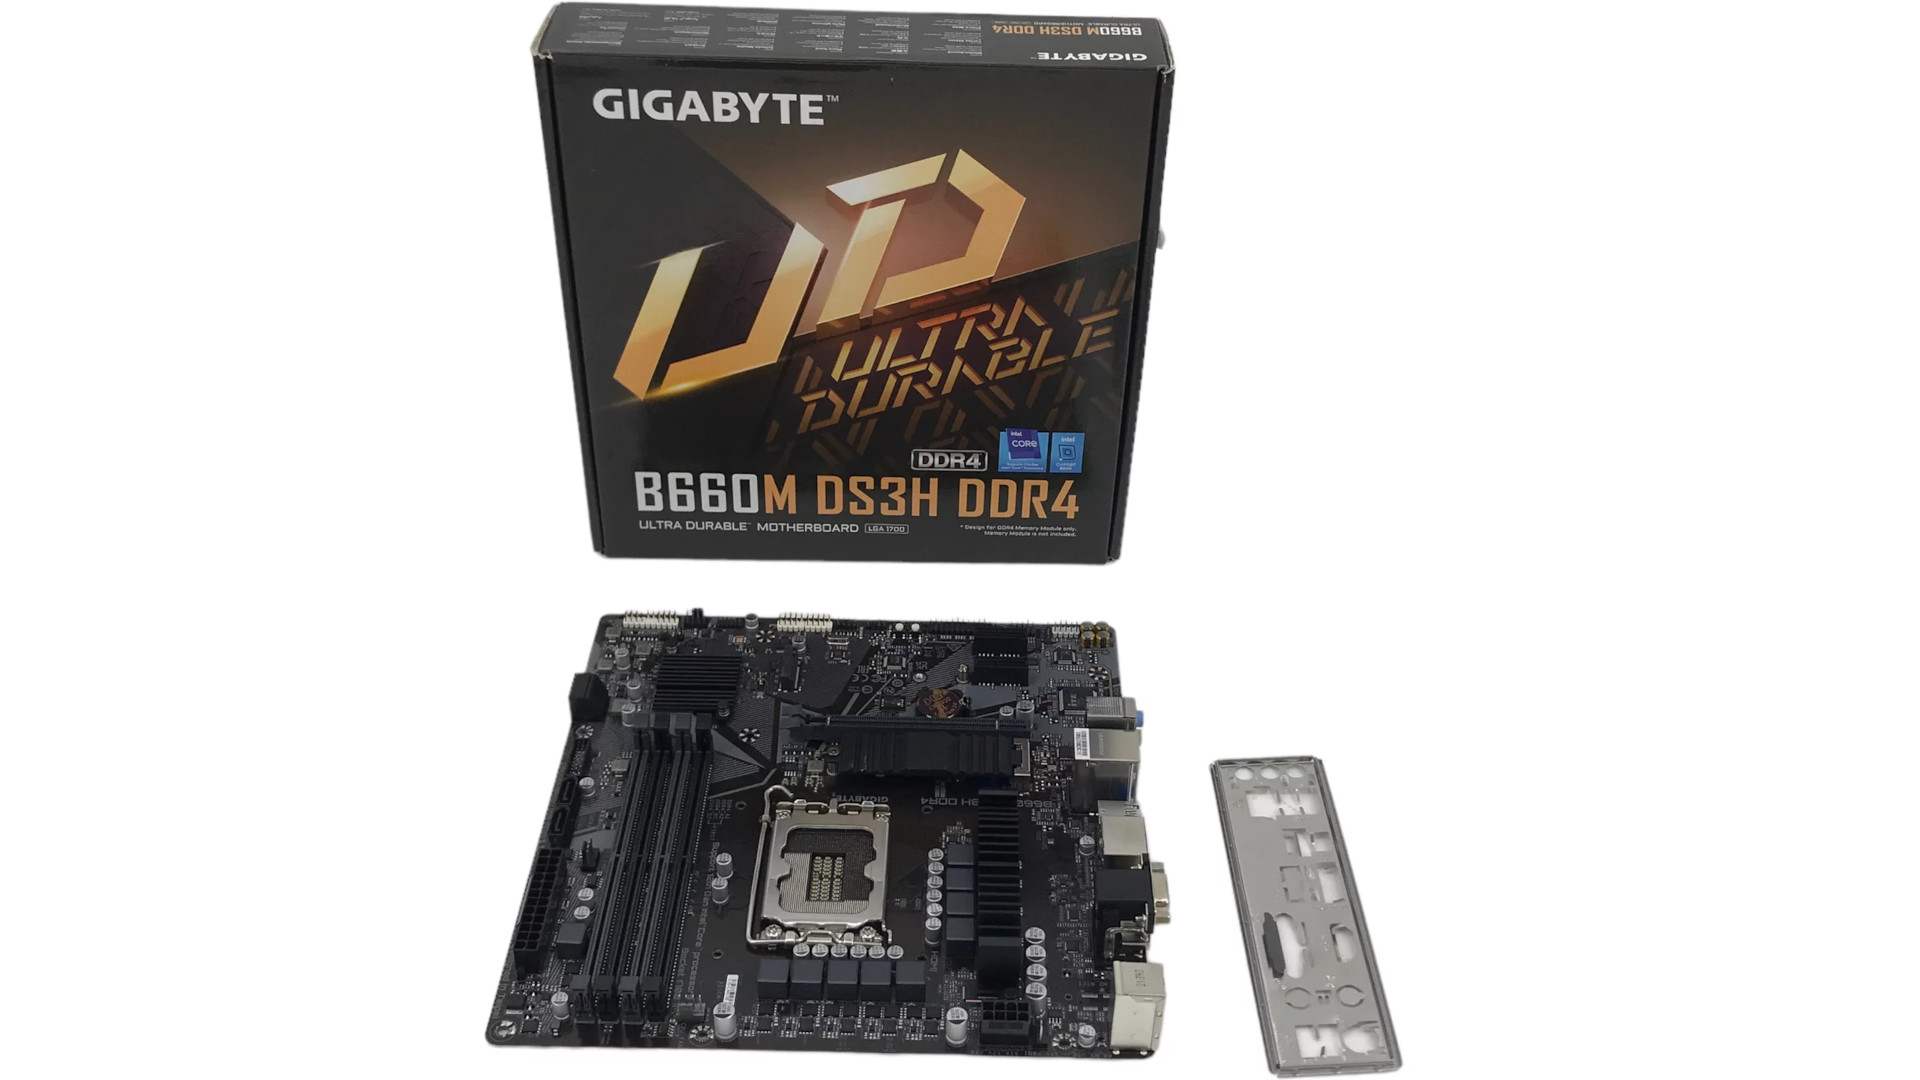 GIGABYTE B660M DS3H DDR4 Motherboard 5